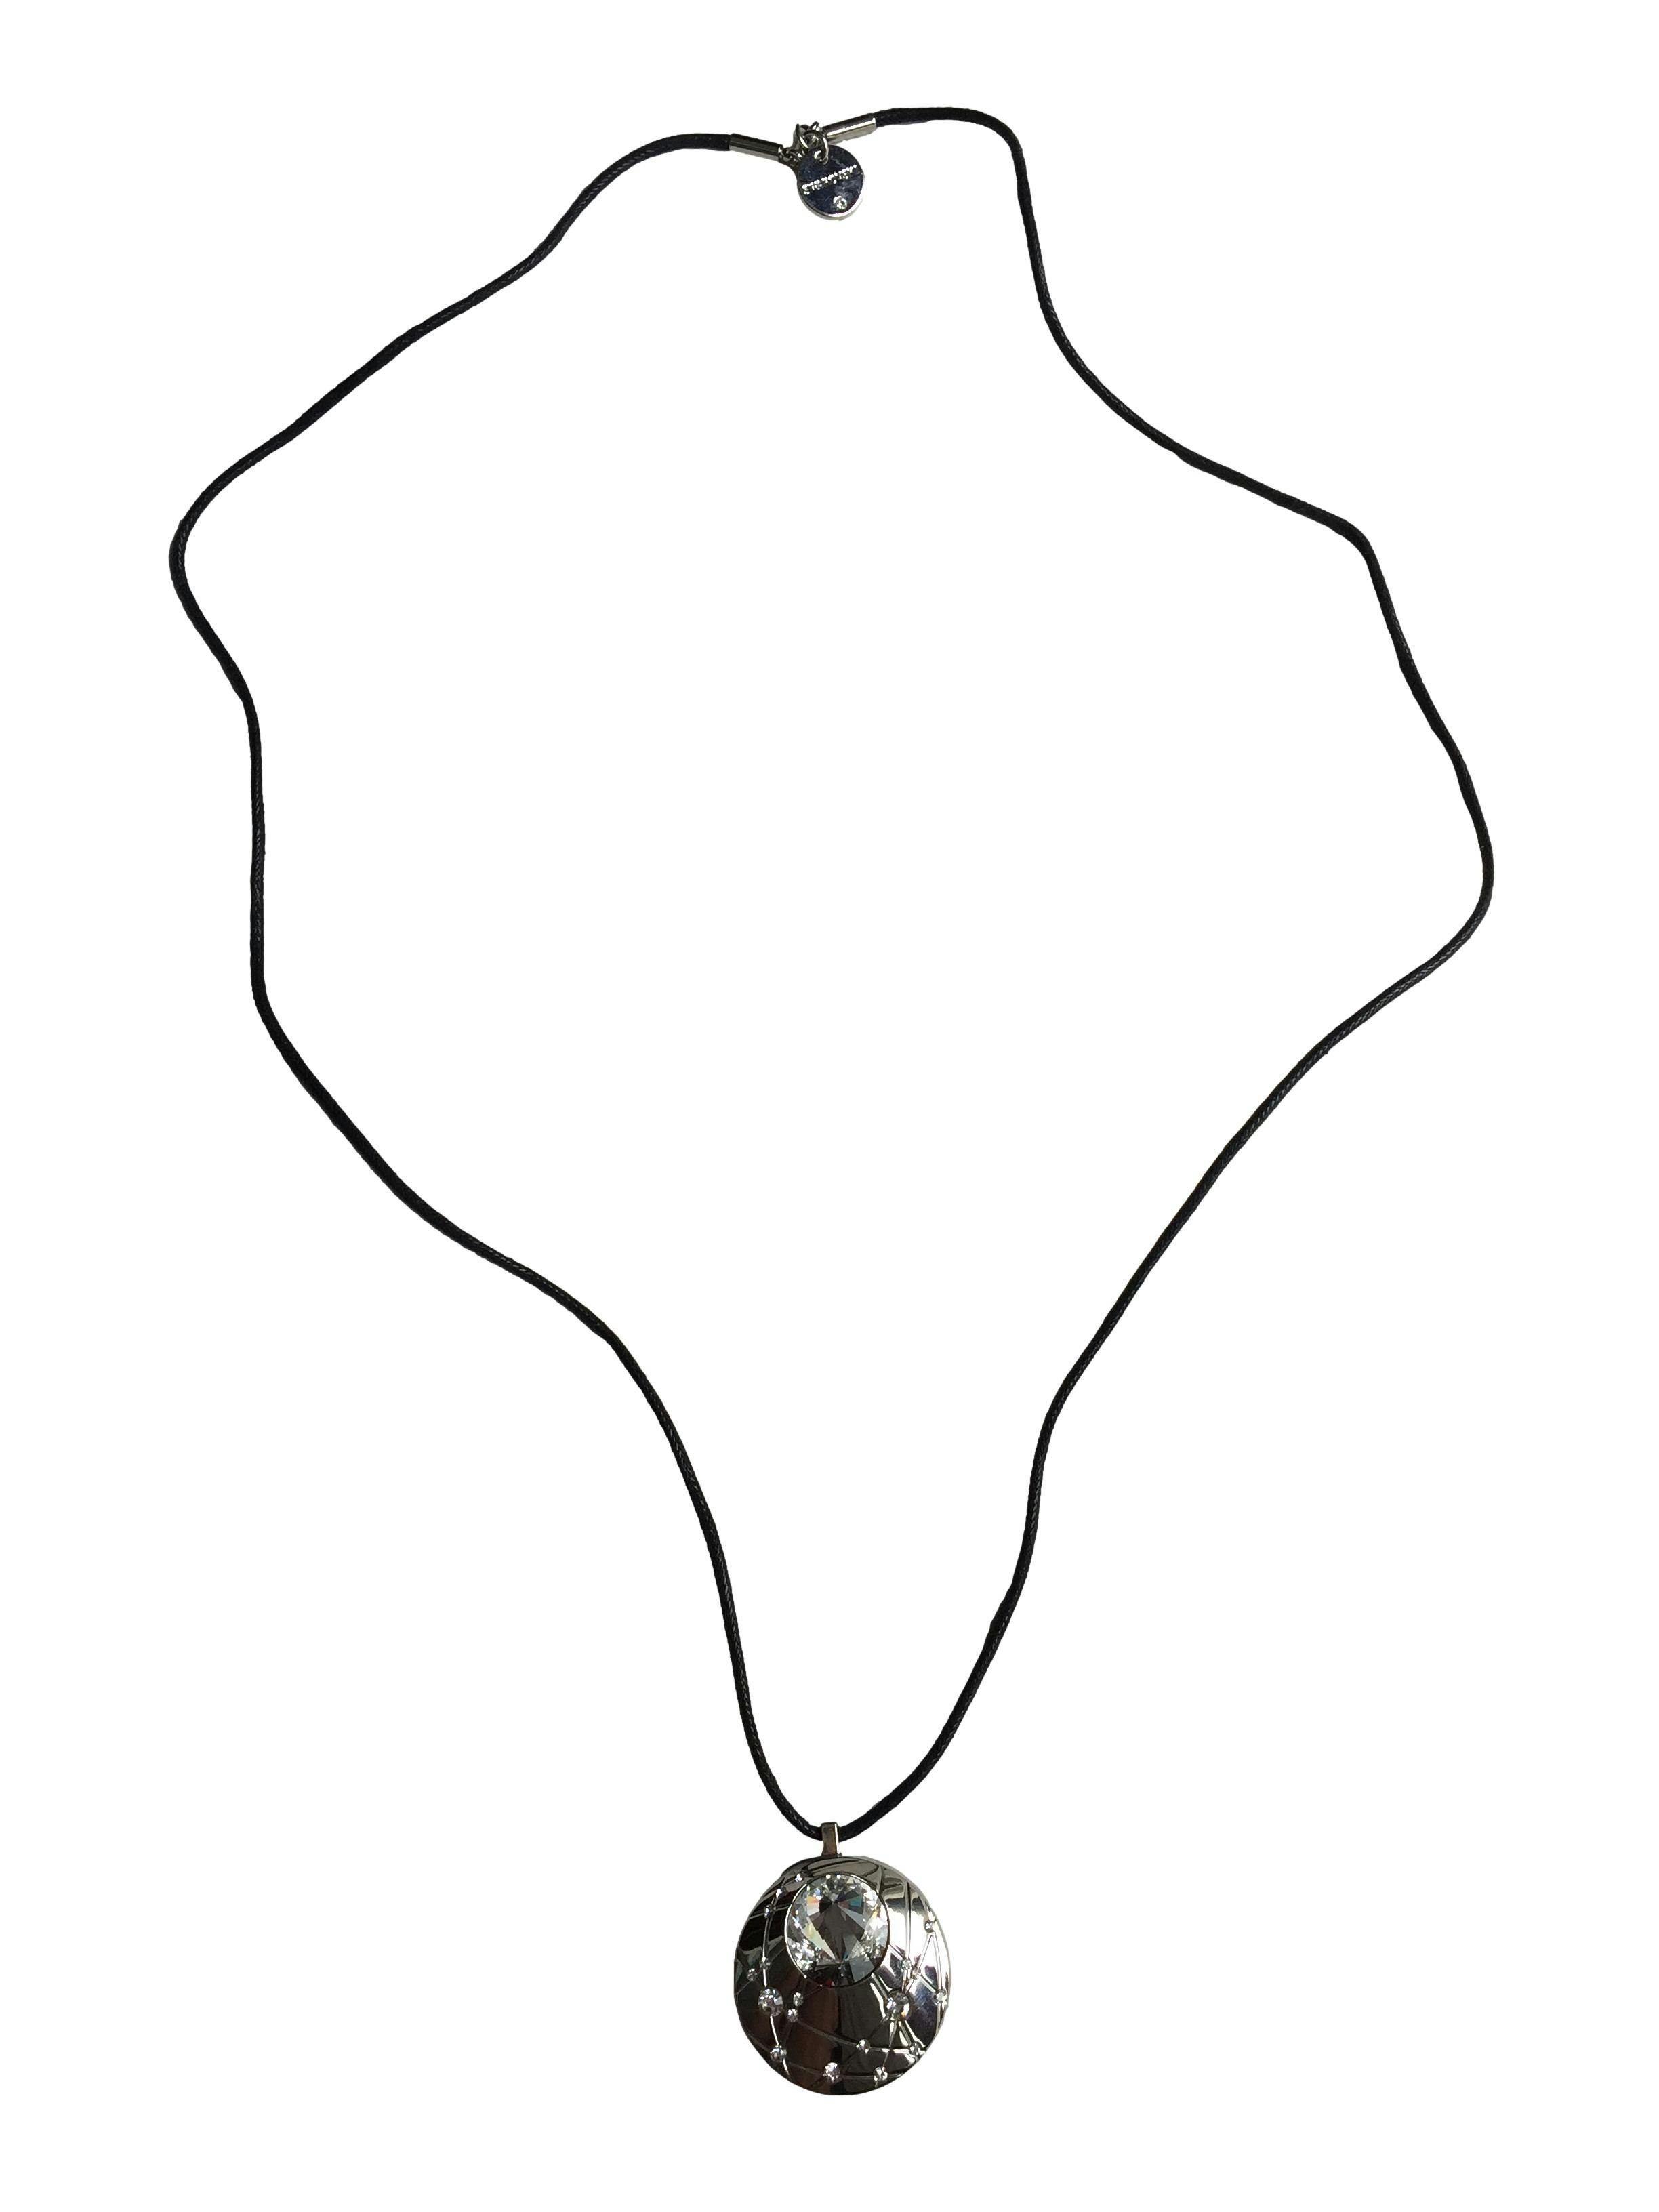 Collar Aura by Swarovski de cuerina negra, dije con cristales contenedor de iluminador facial y corporal .Con estuche y certificado de garantía. Largo 84cm.